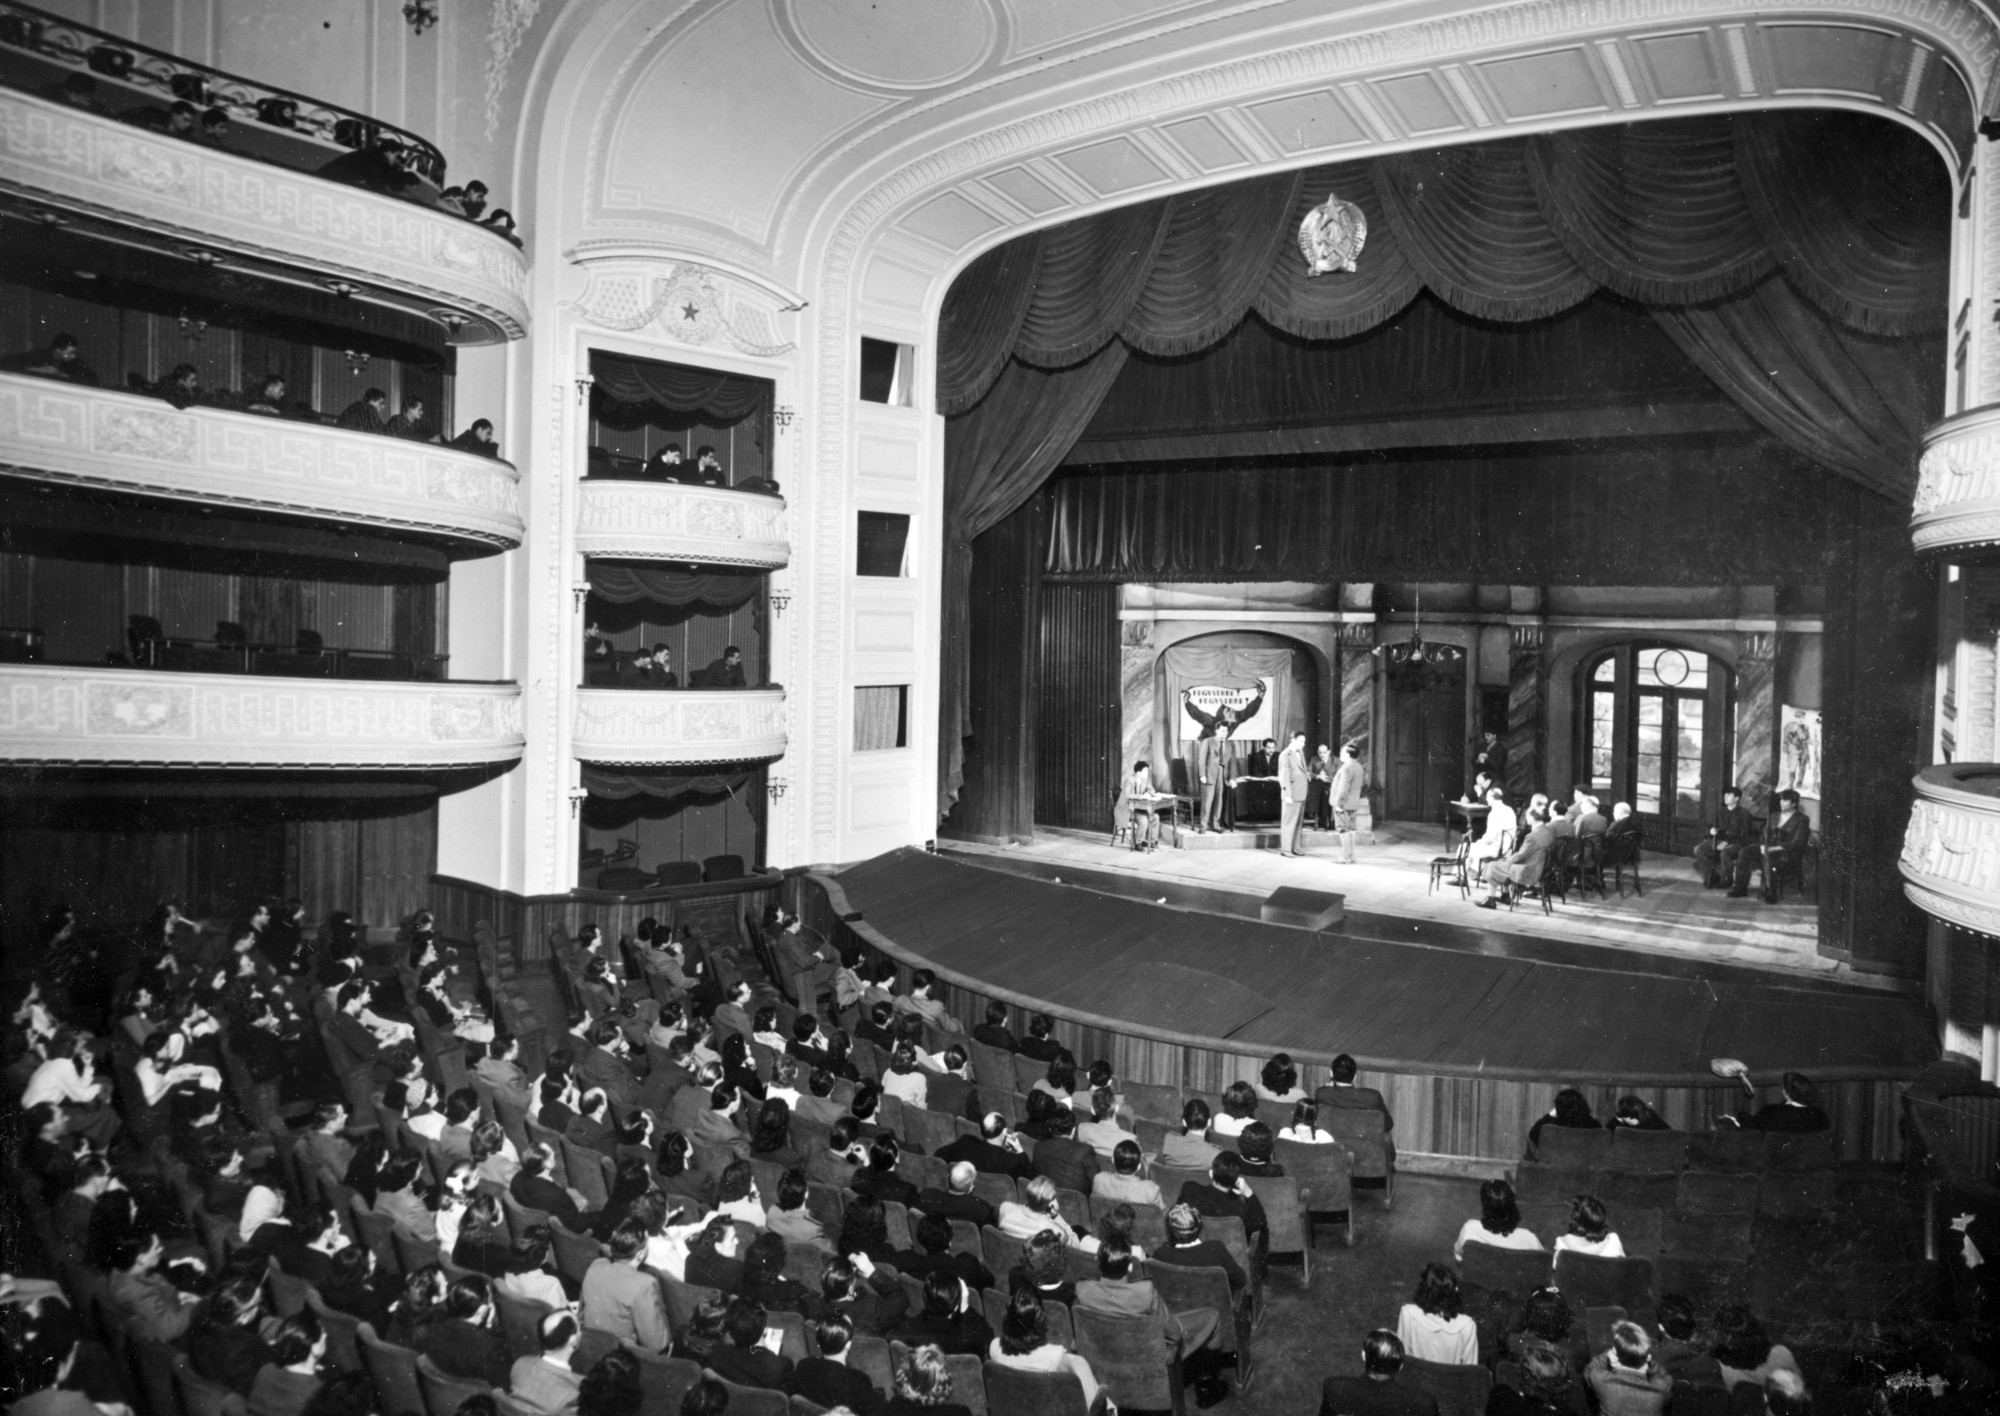 A második világháborút követő újjáépítés után a Vígszínházat 1951-ben nyitották újra, a Magyar Néphadsereg Színházaként. A felújítás során az enteriőr nem kapta vissza eredeti díszítését, a pompa csak az 1993-94-es felújítás során költözött vissza a színház belsejébe.